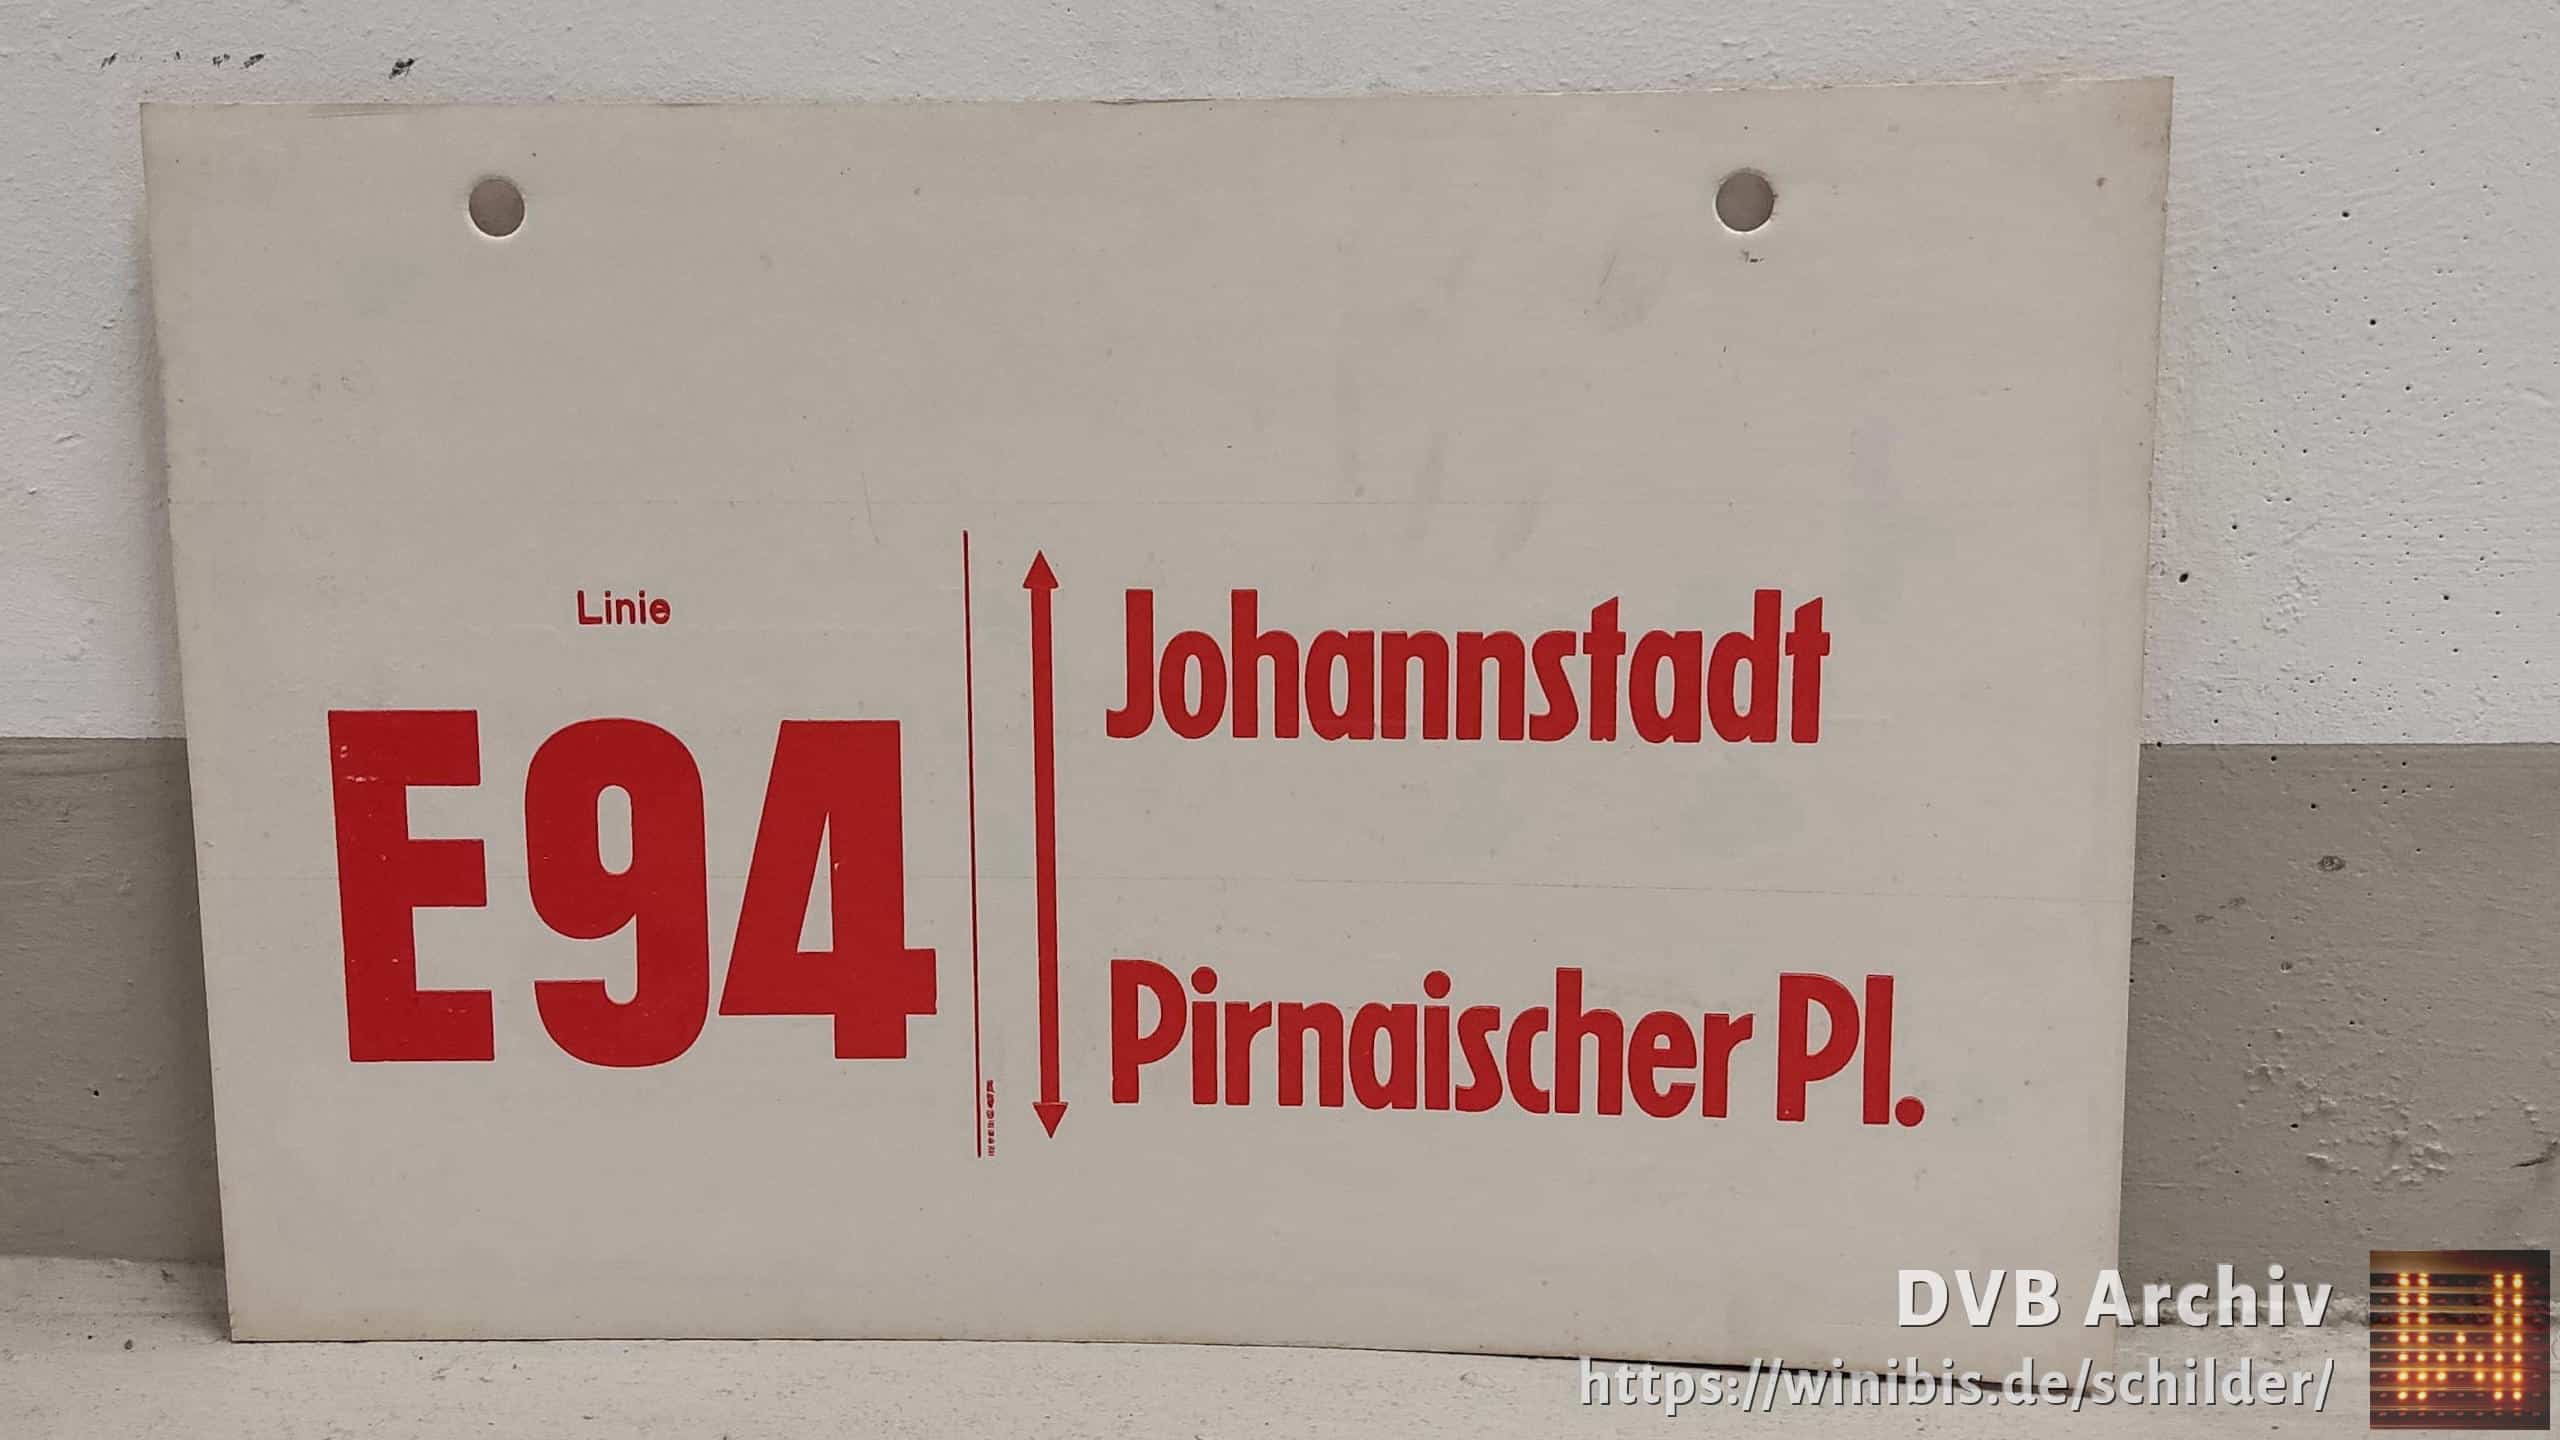 Ein seltenes Bus-Linienschild aus Dresden der Linie E94 von Johannstadt nach Pirnaischer Pl. #2